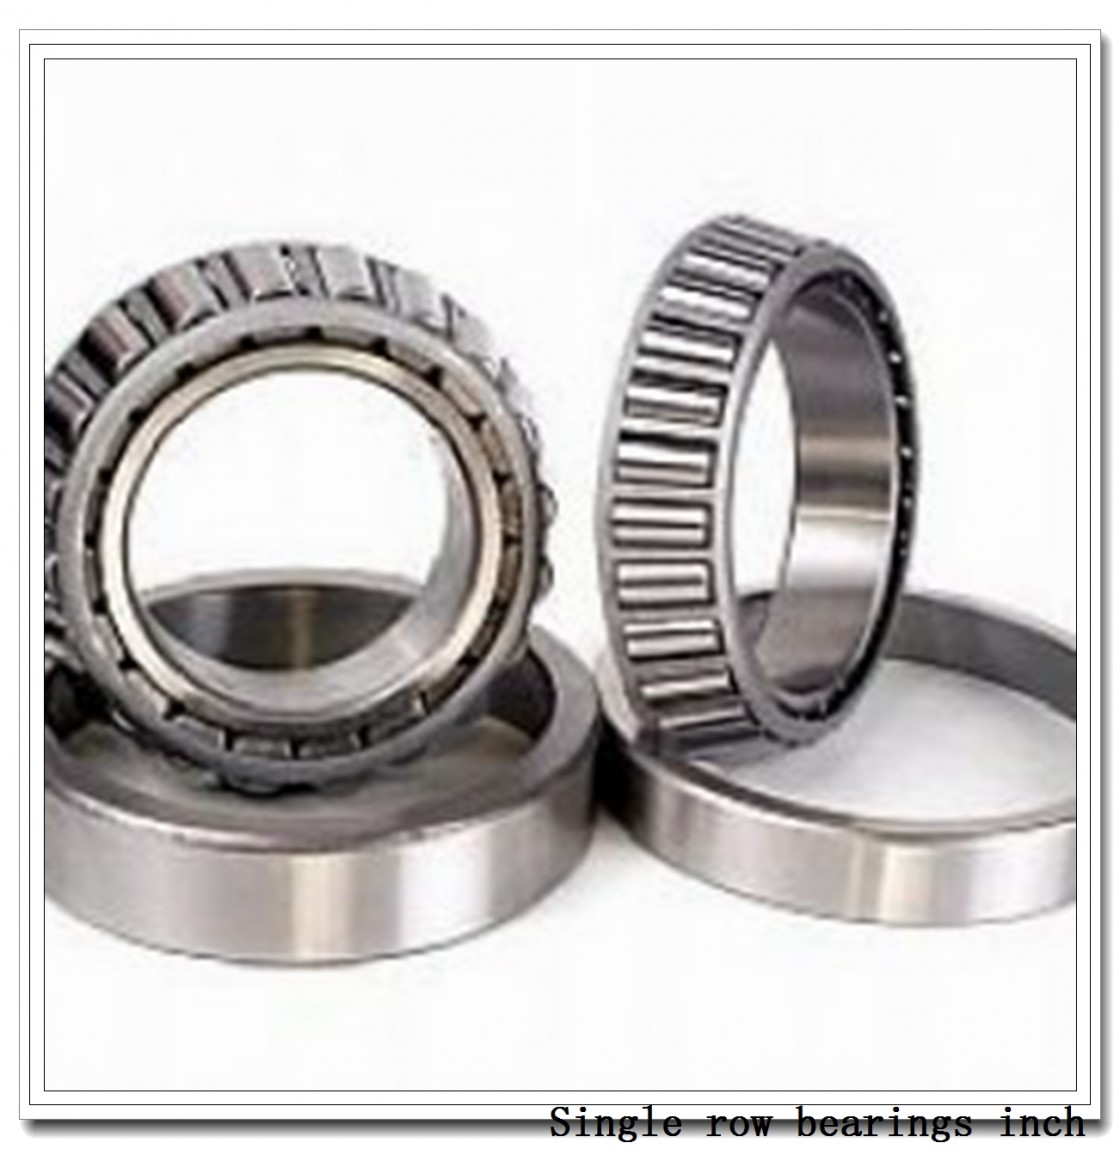 64450/64700 Single row bearings inch